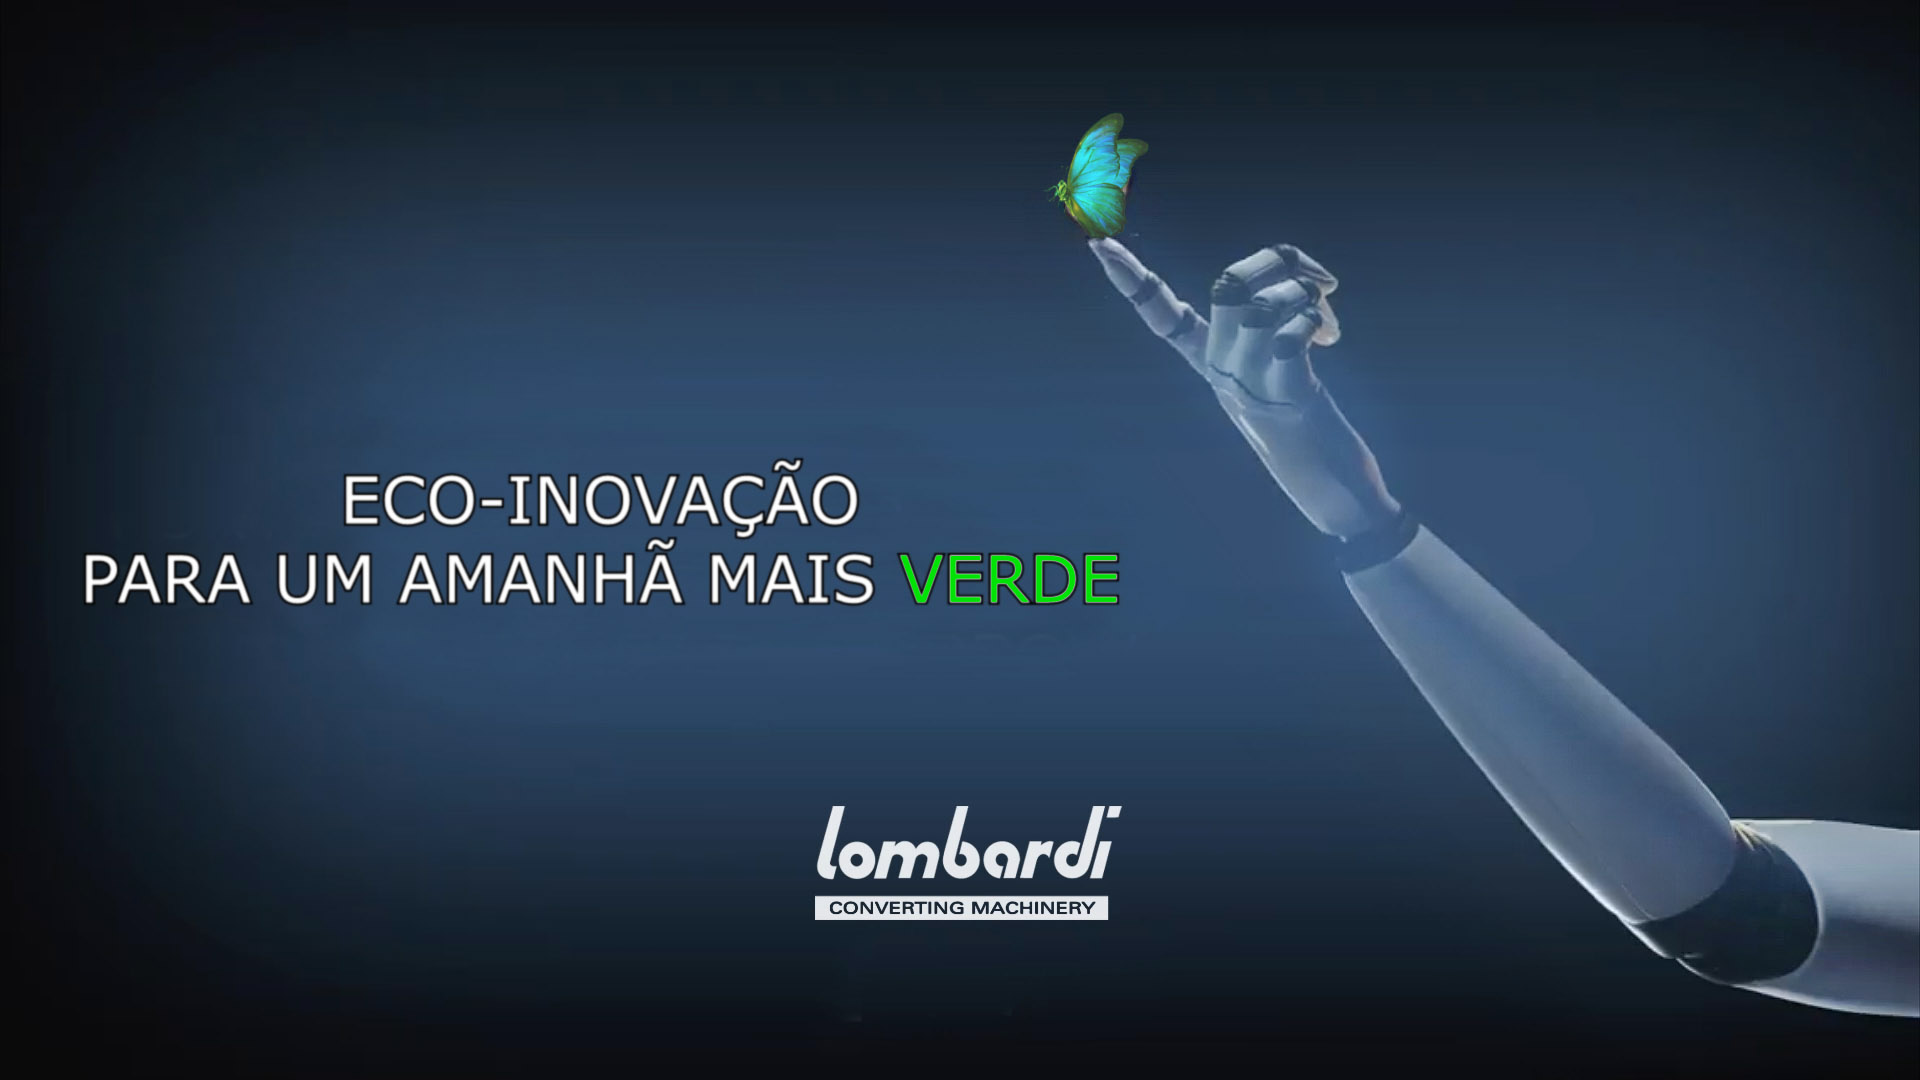 Lombardi anuncia parceria com UPM Raflatac na LabelExpo 2023 para ajudar o meio ambiente 